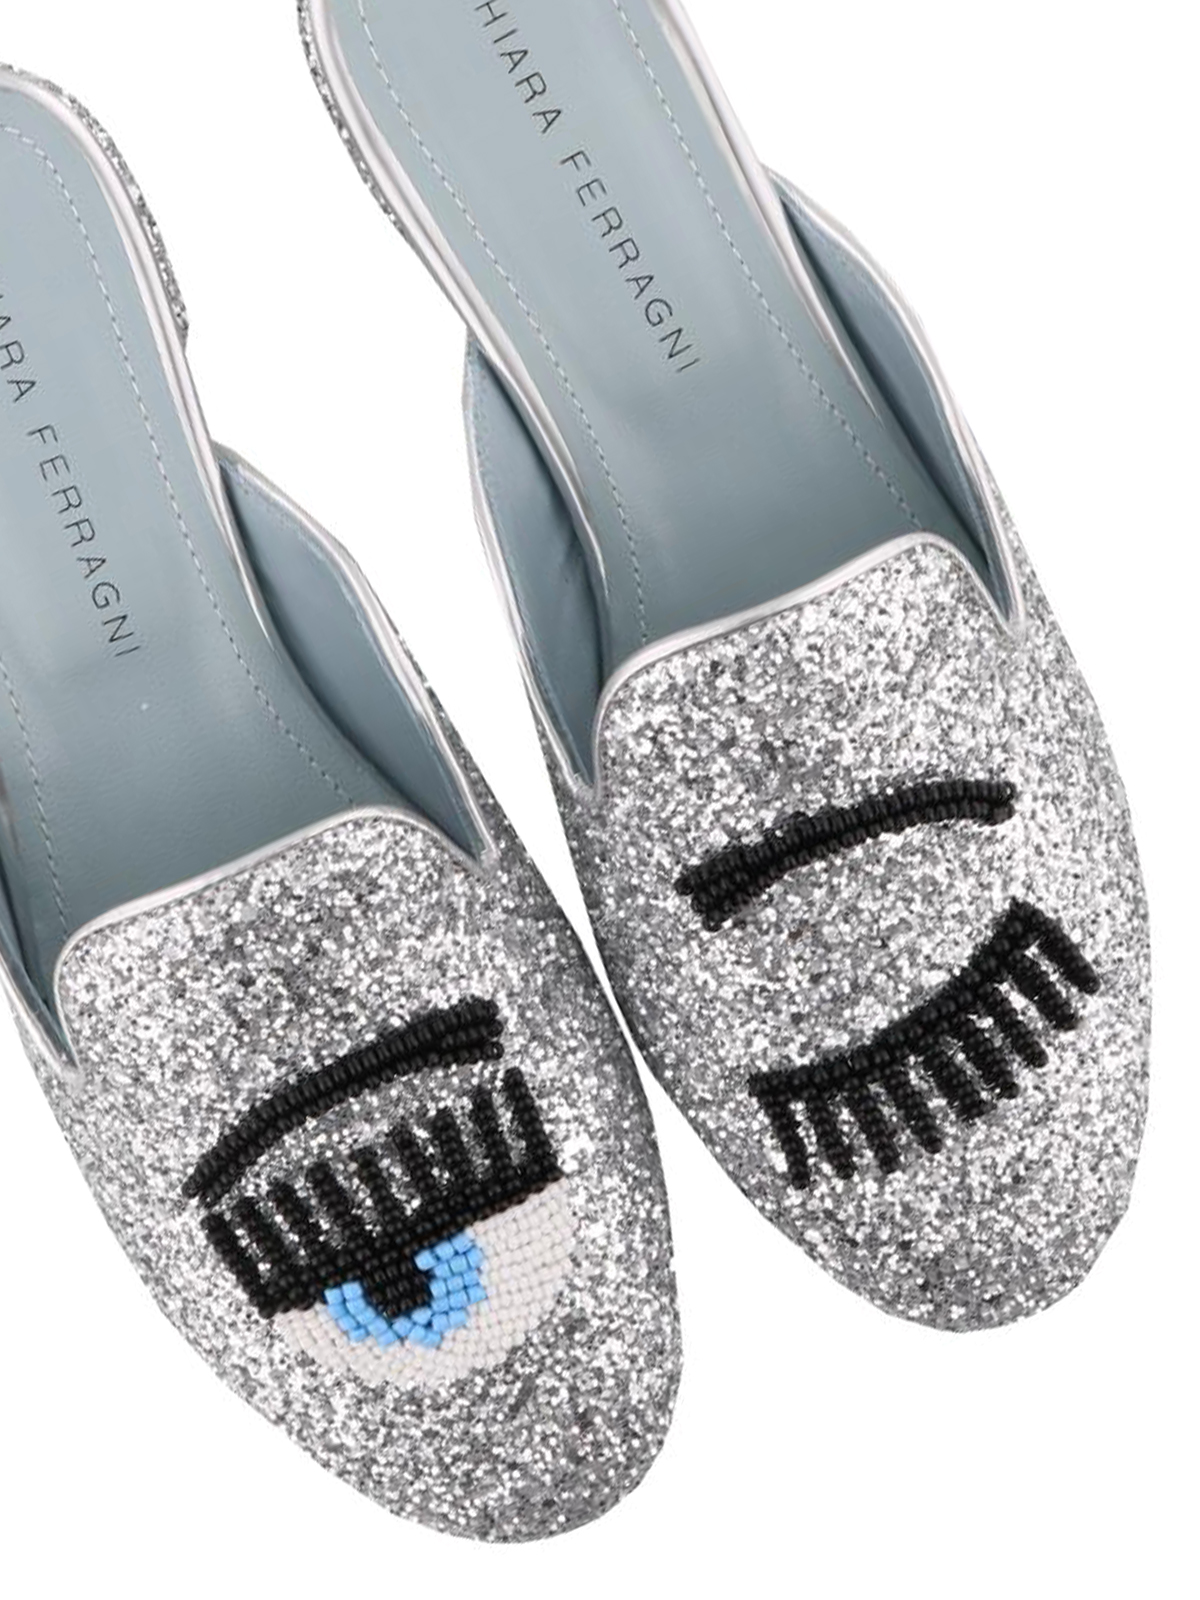 Mules shoes Chiara Ferragni - Flirting silver glitter mules - CF1502